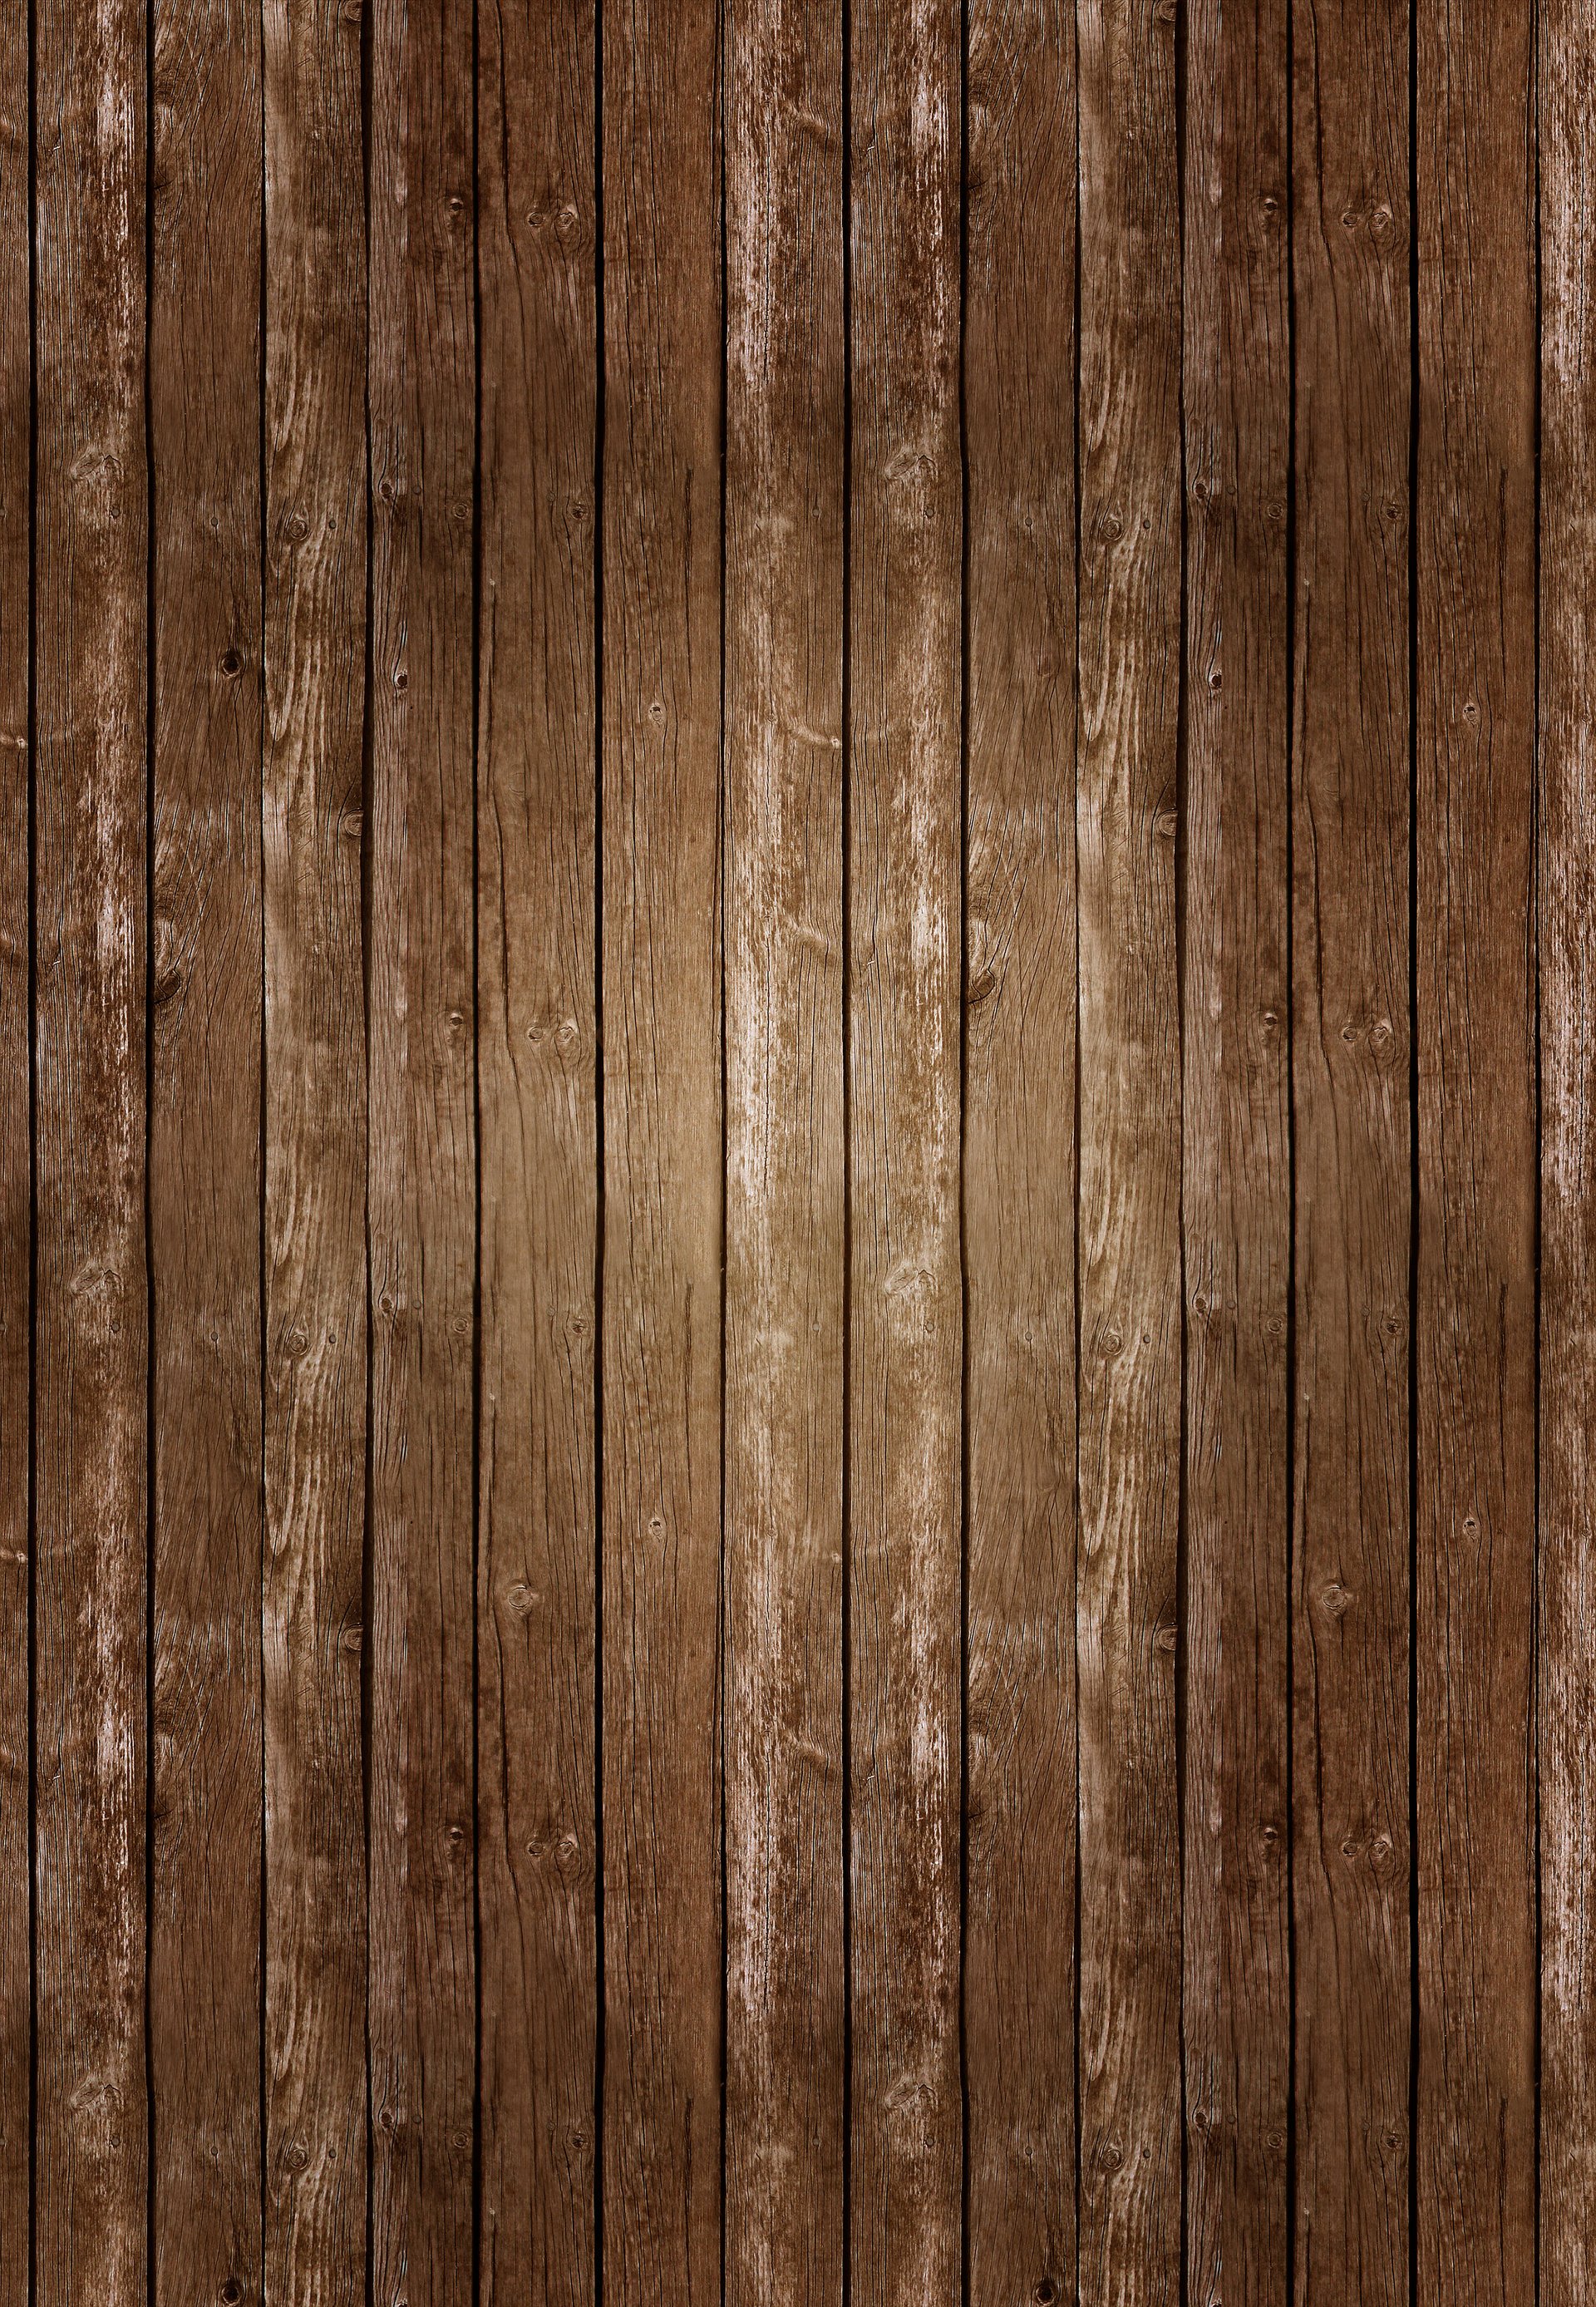 ウッドデザイン壁紙,木材,褐色,ウッドステイン,板,広葉樹